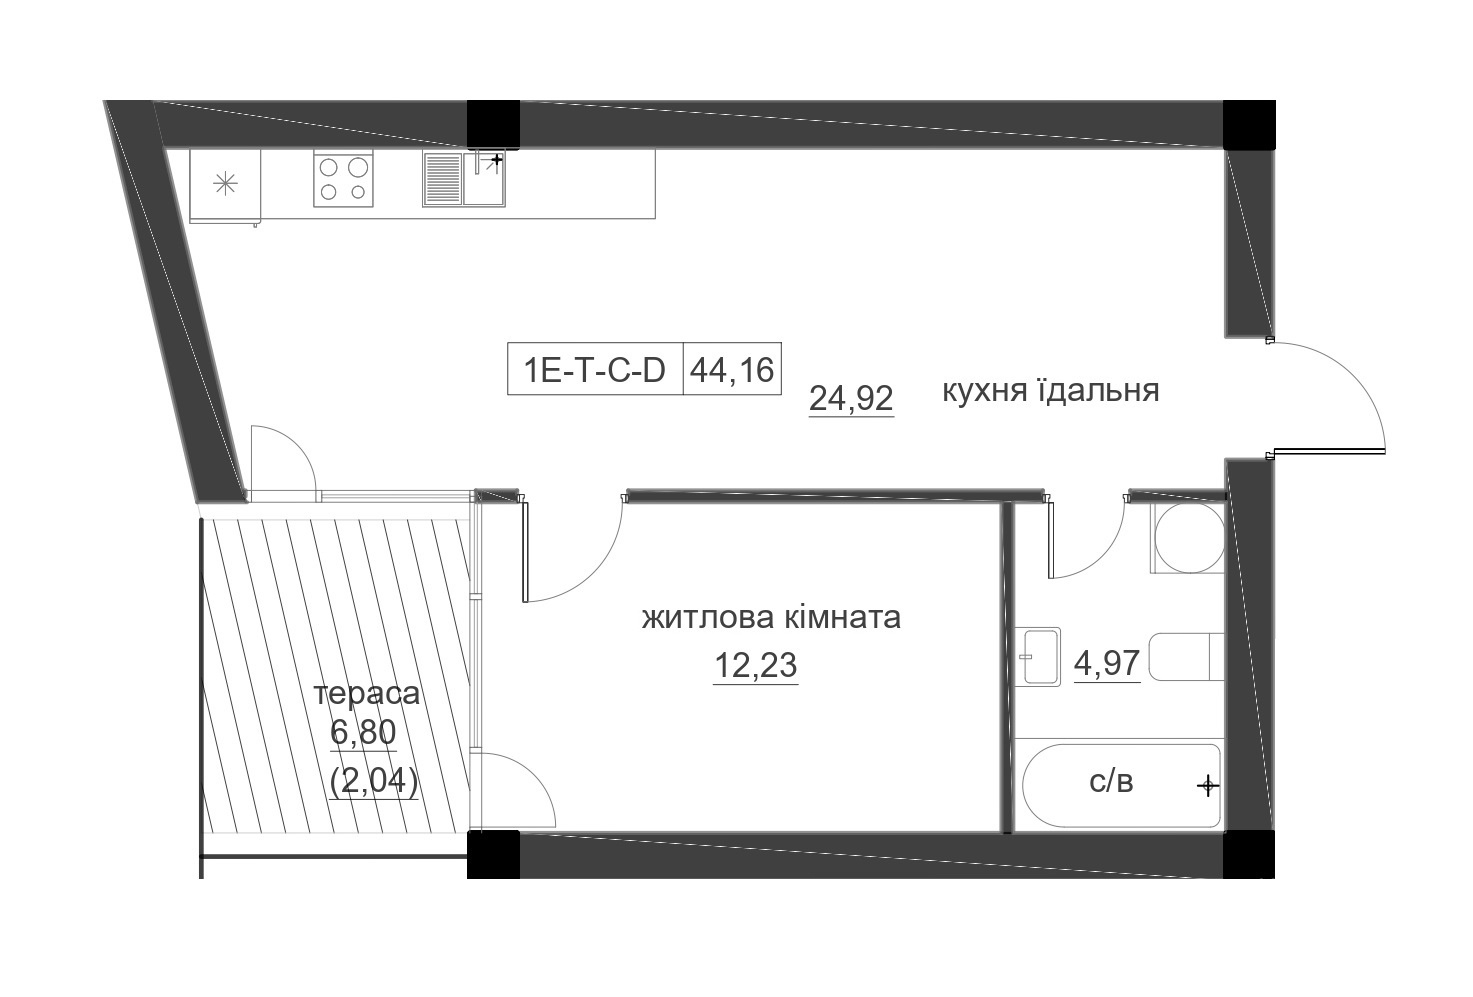 Планування 1-к квартира площею 44.16м2, LR-005-01/0001.